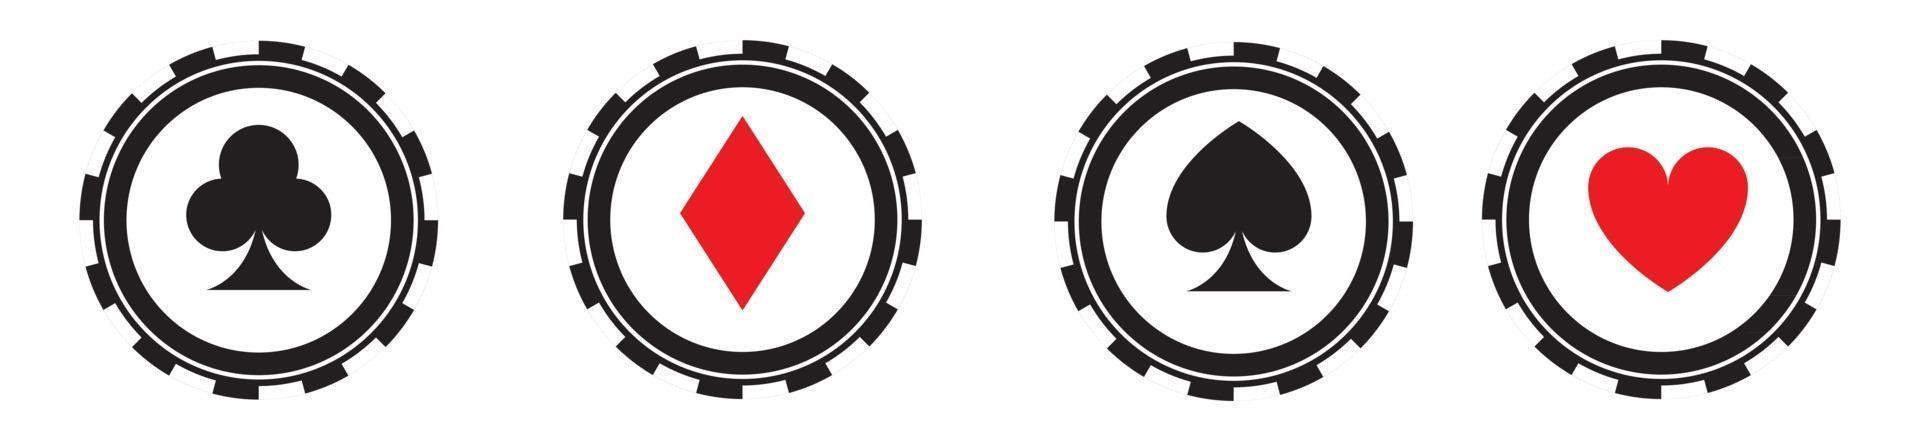 insieme di vettore delle icone nere delle fiches da poker. logo di chip poker casinò isolato.